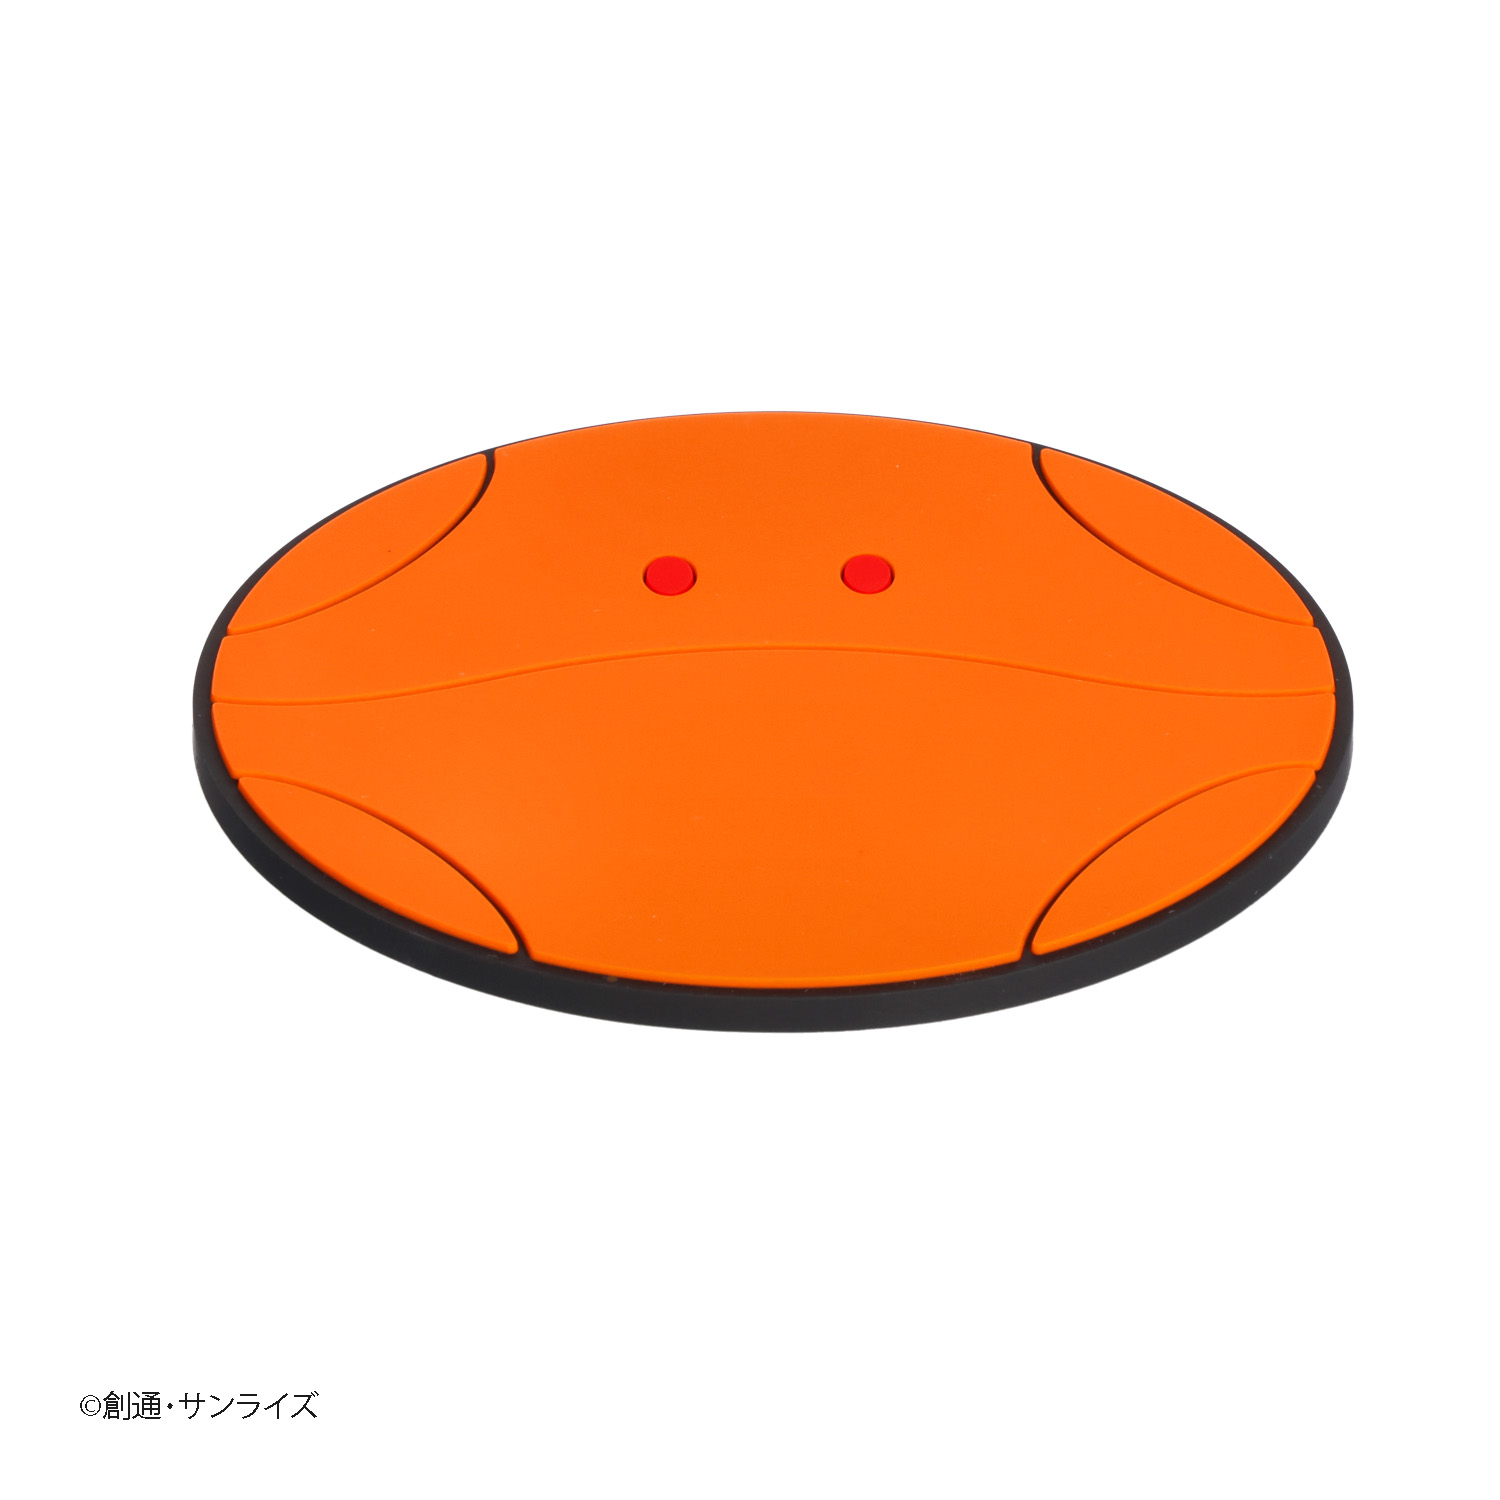 STRICT-G『機動戦士ガンダムSEED』オレンジハロ ラバーコースター